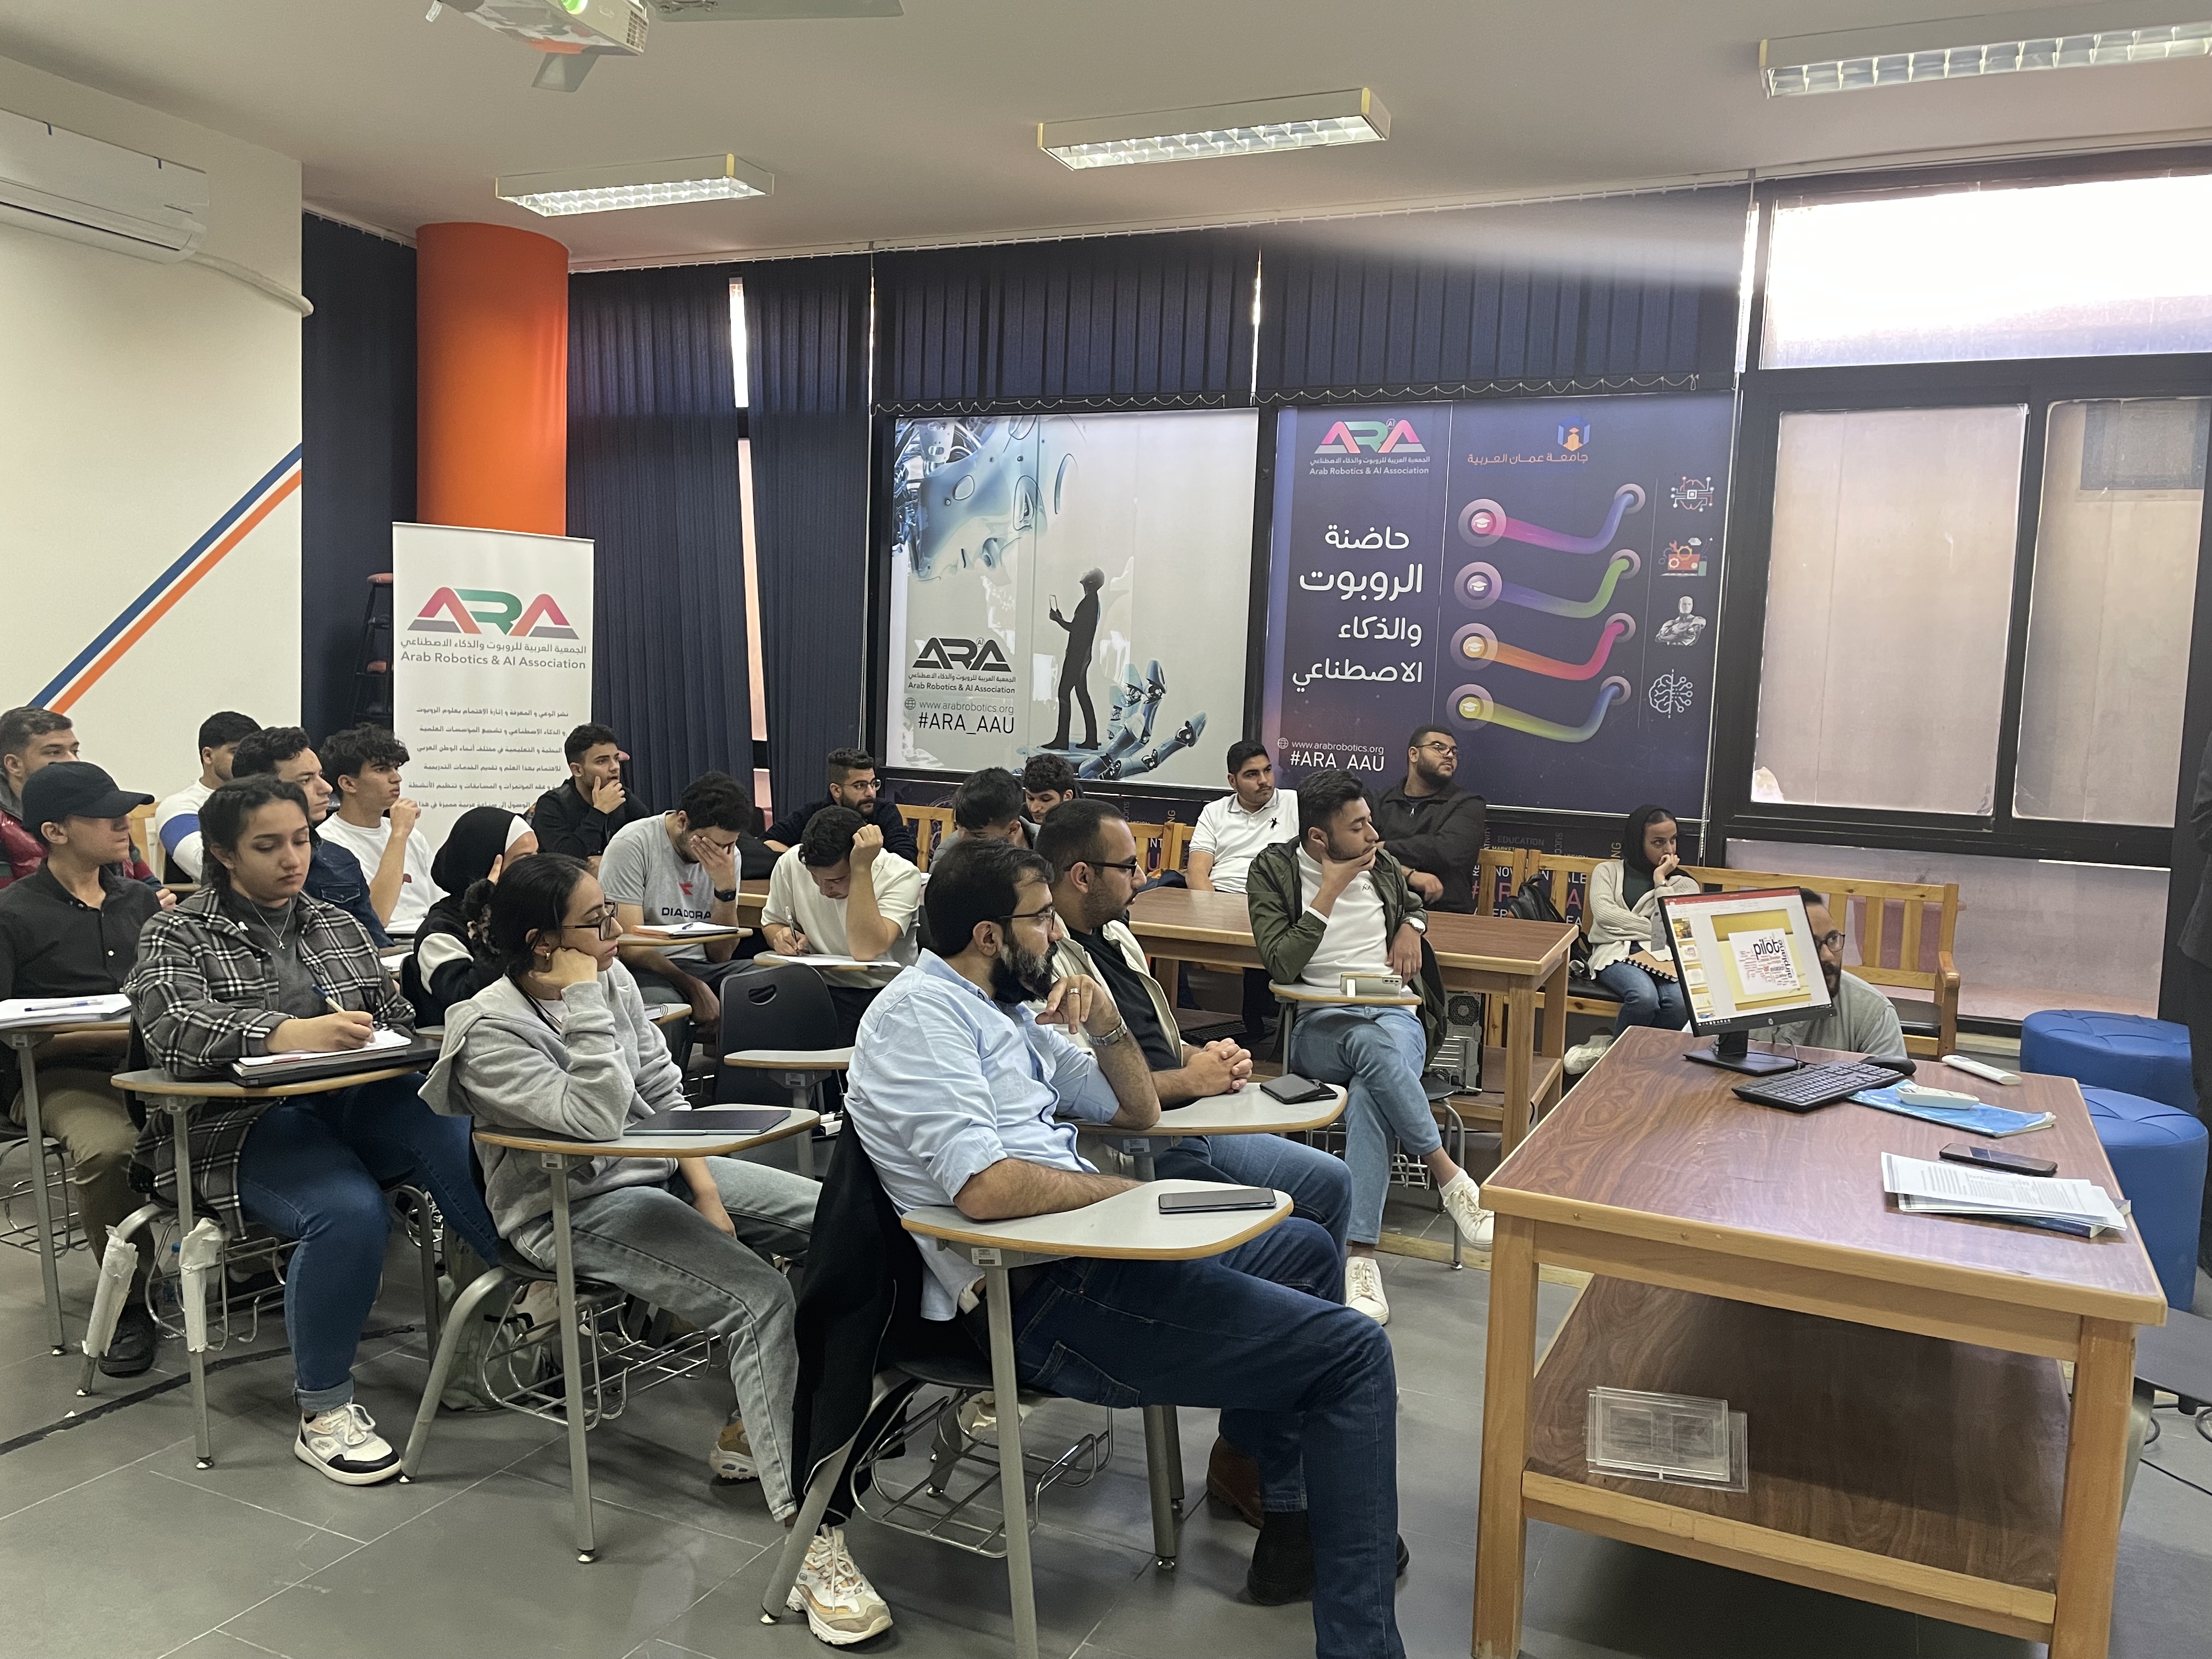 دورة "اللغة المتخصصة في الطيران" لطلبة عمان العربية1